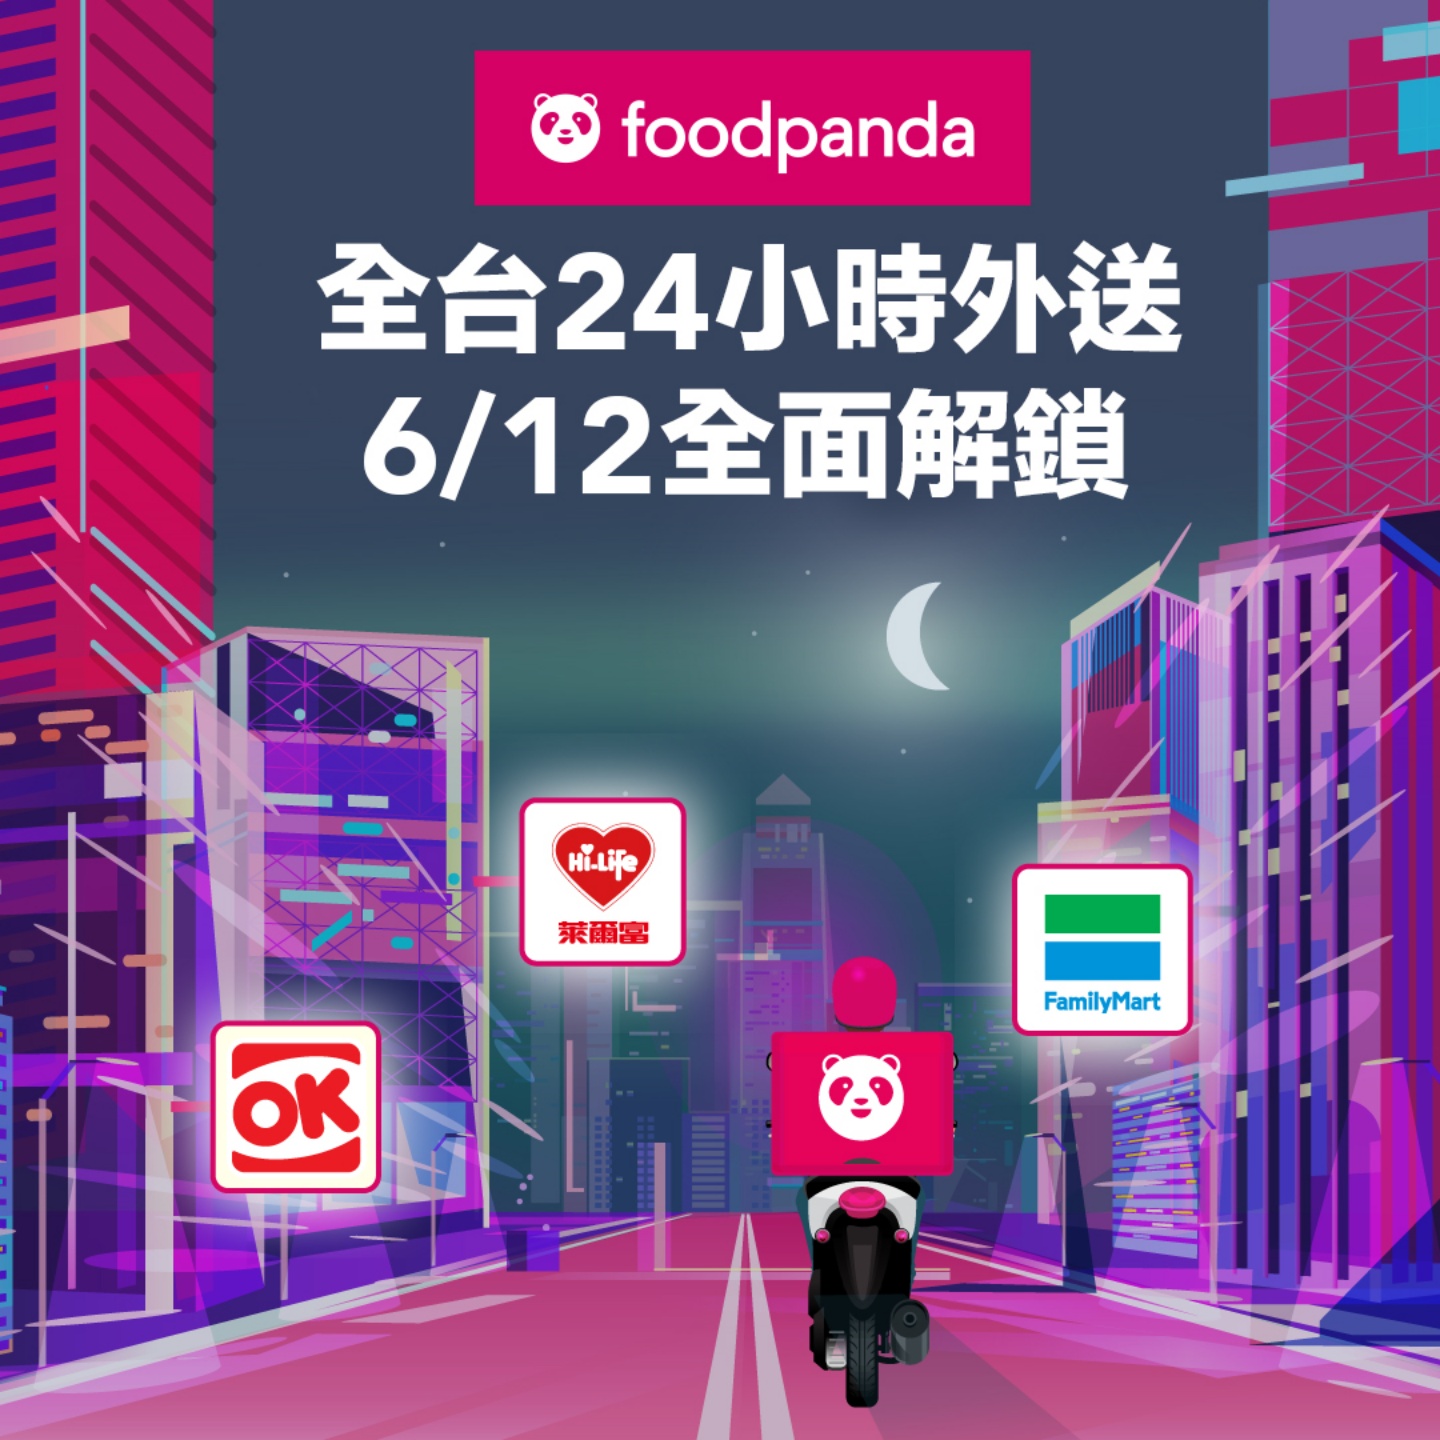 24 小時外送！foodpanda 開放全台 16 個縣市全天外送服務！半夜嘴饞有救啦！